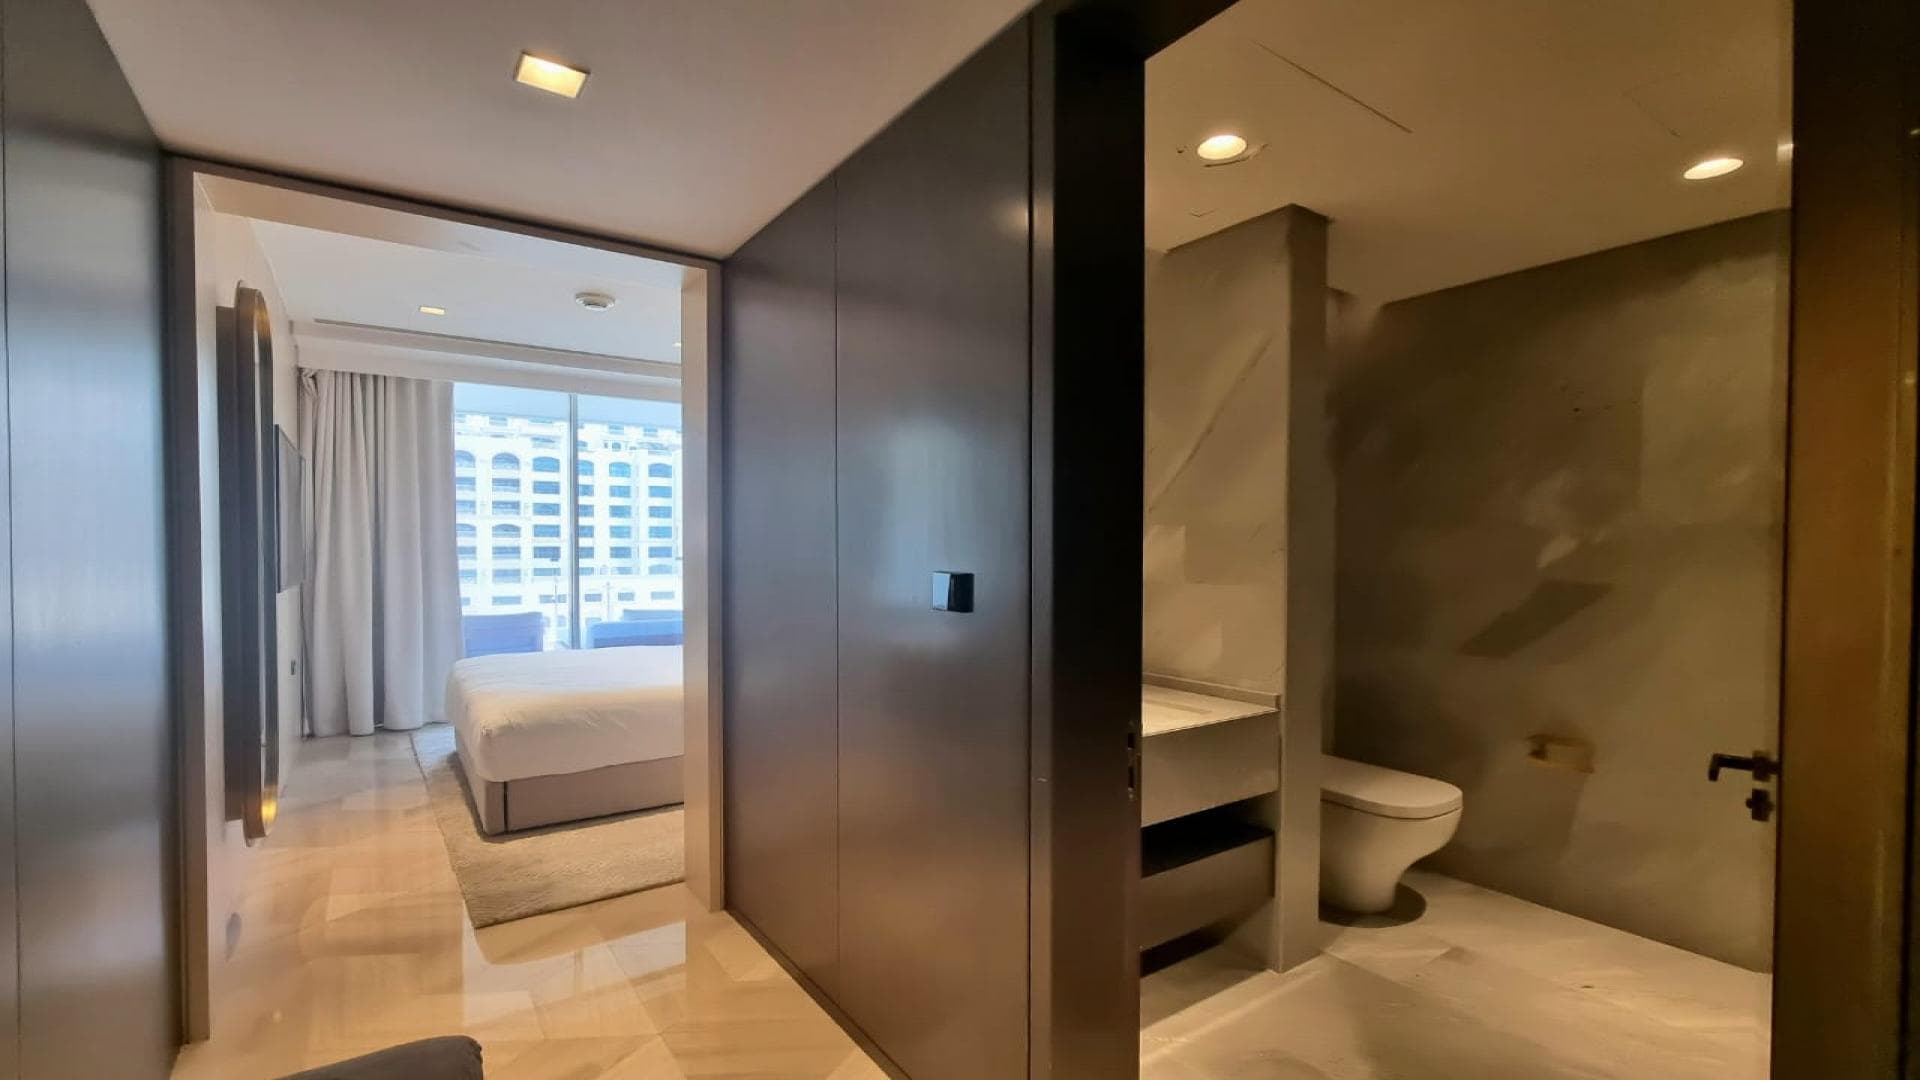 3 Bedroom Apartment For Rent Al Thamam 43 Lp37274 9aa6a2320952200.jpeg